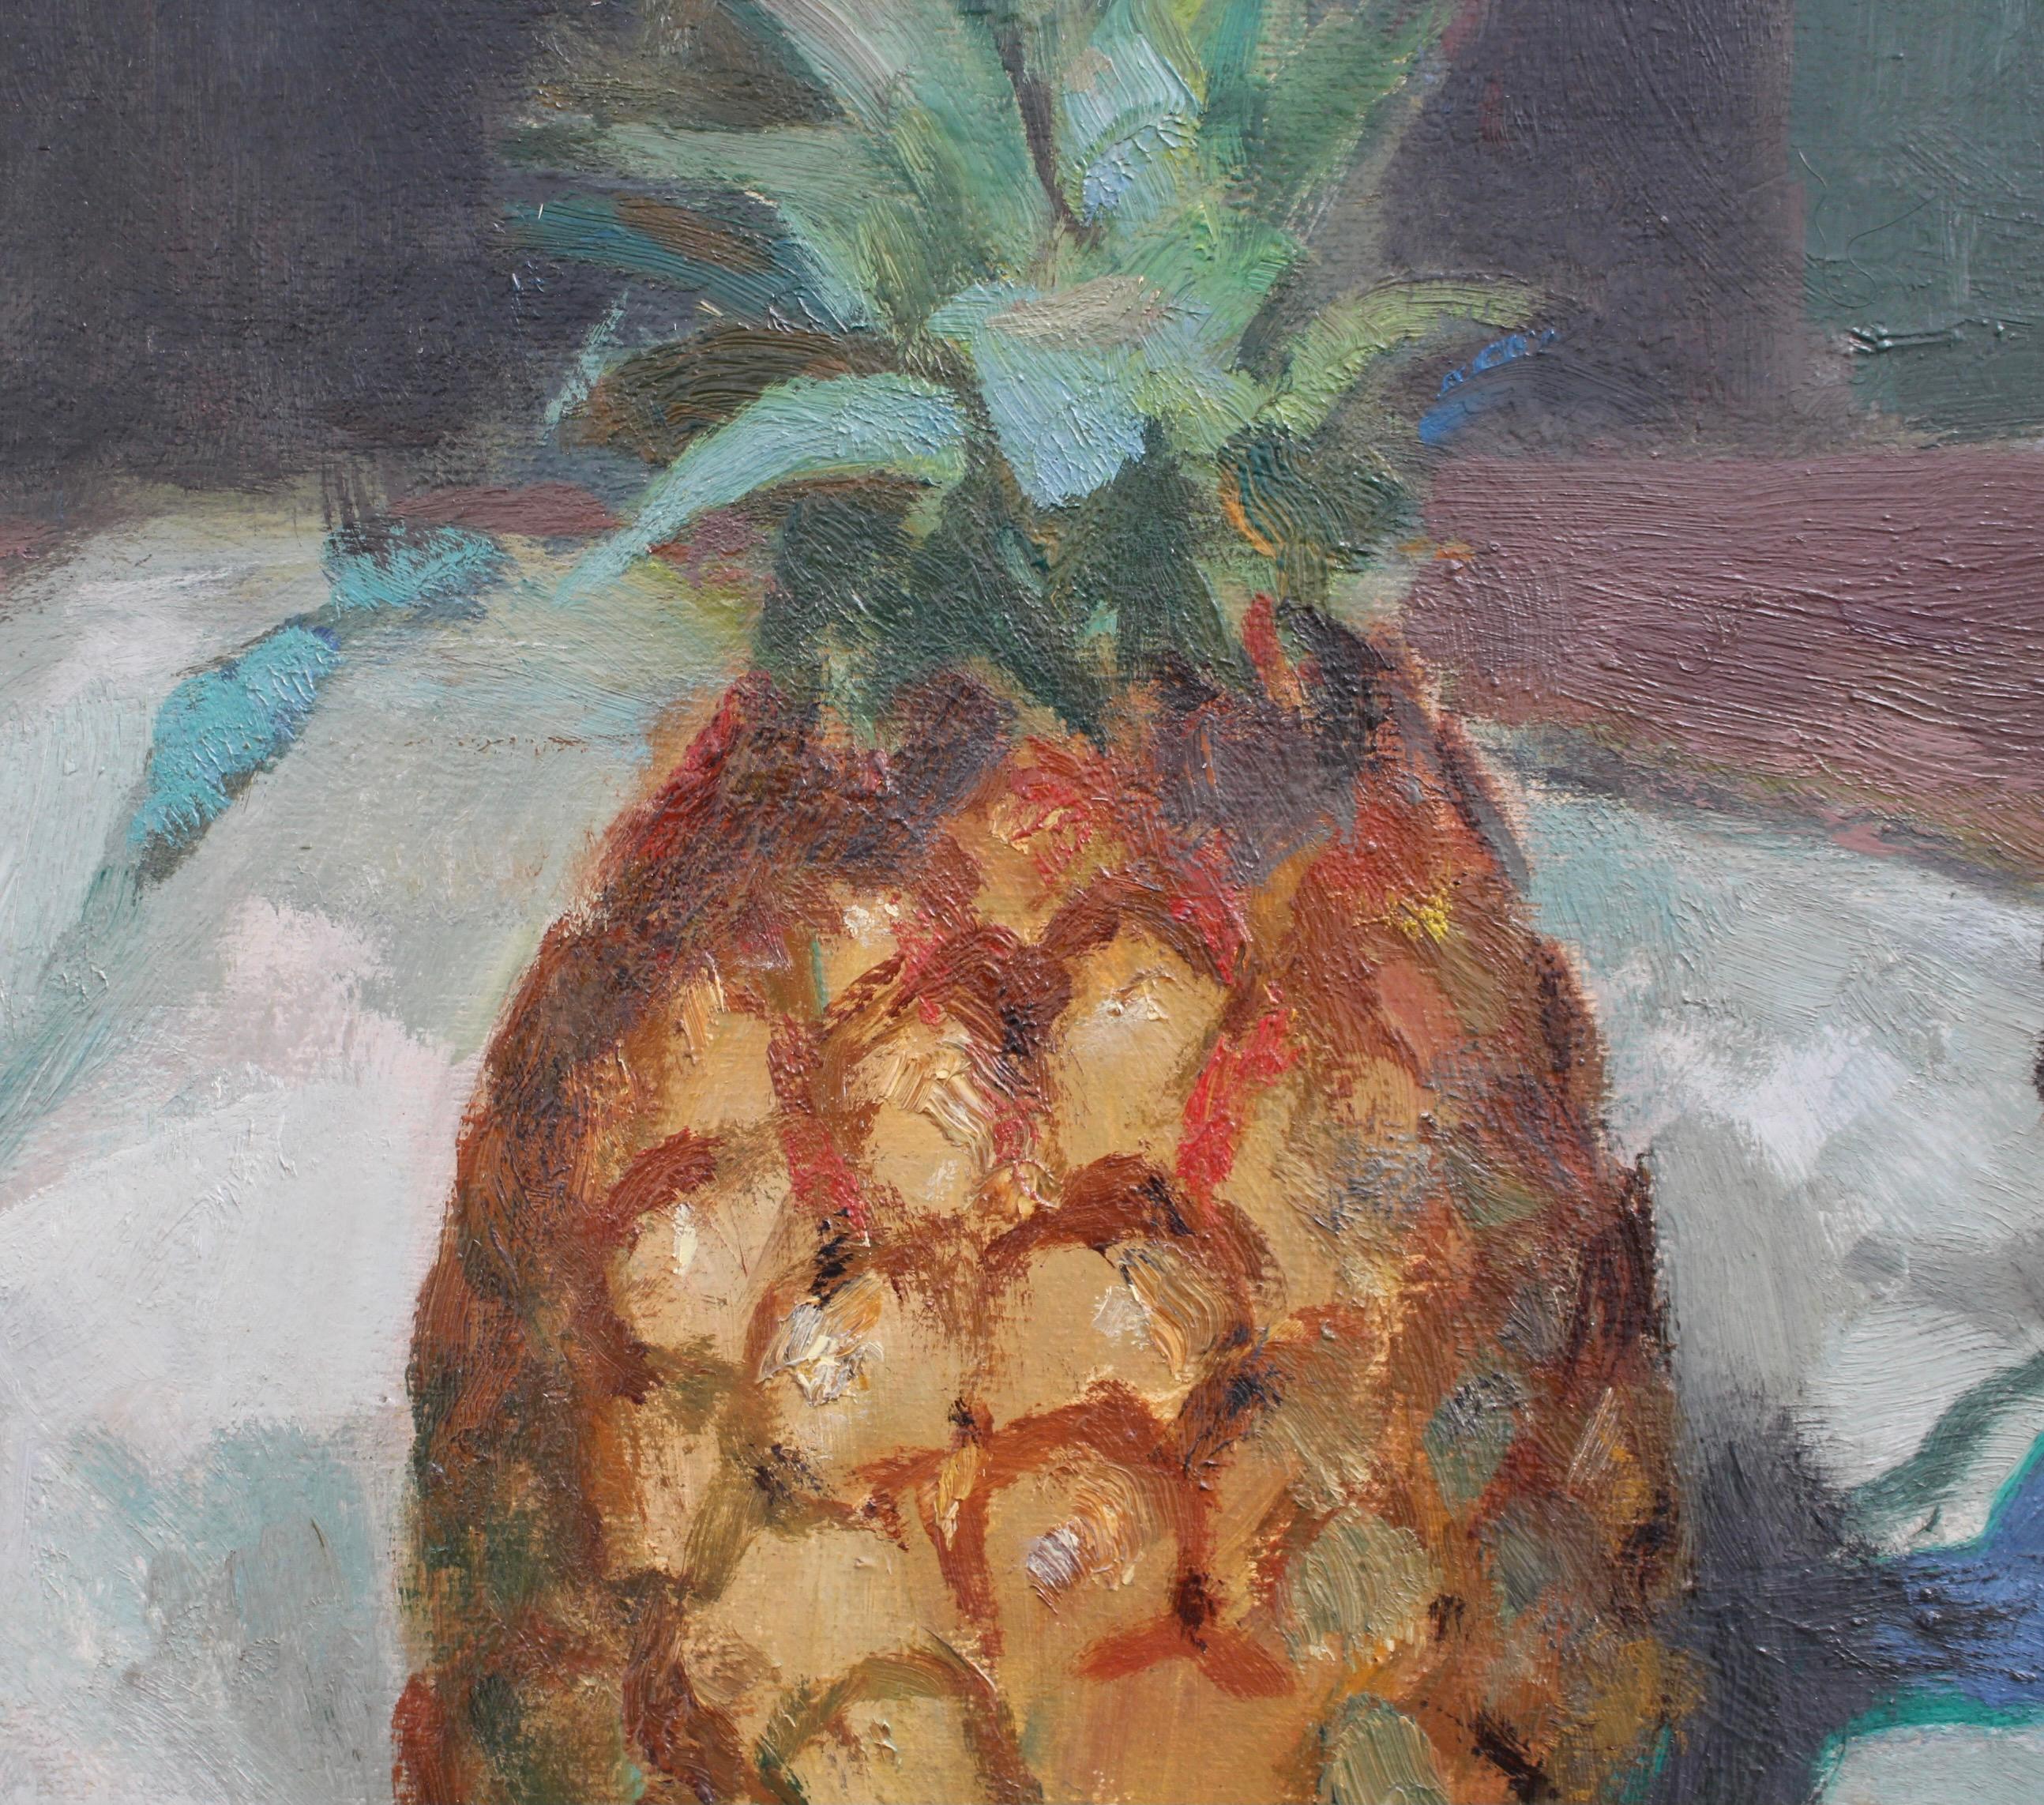 pineapple still life